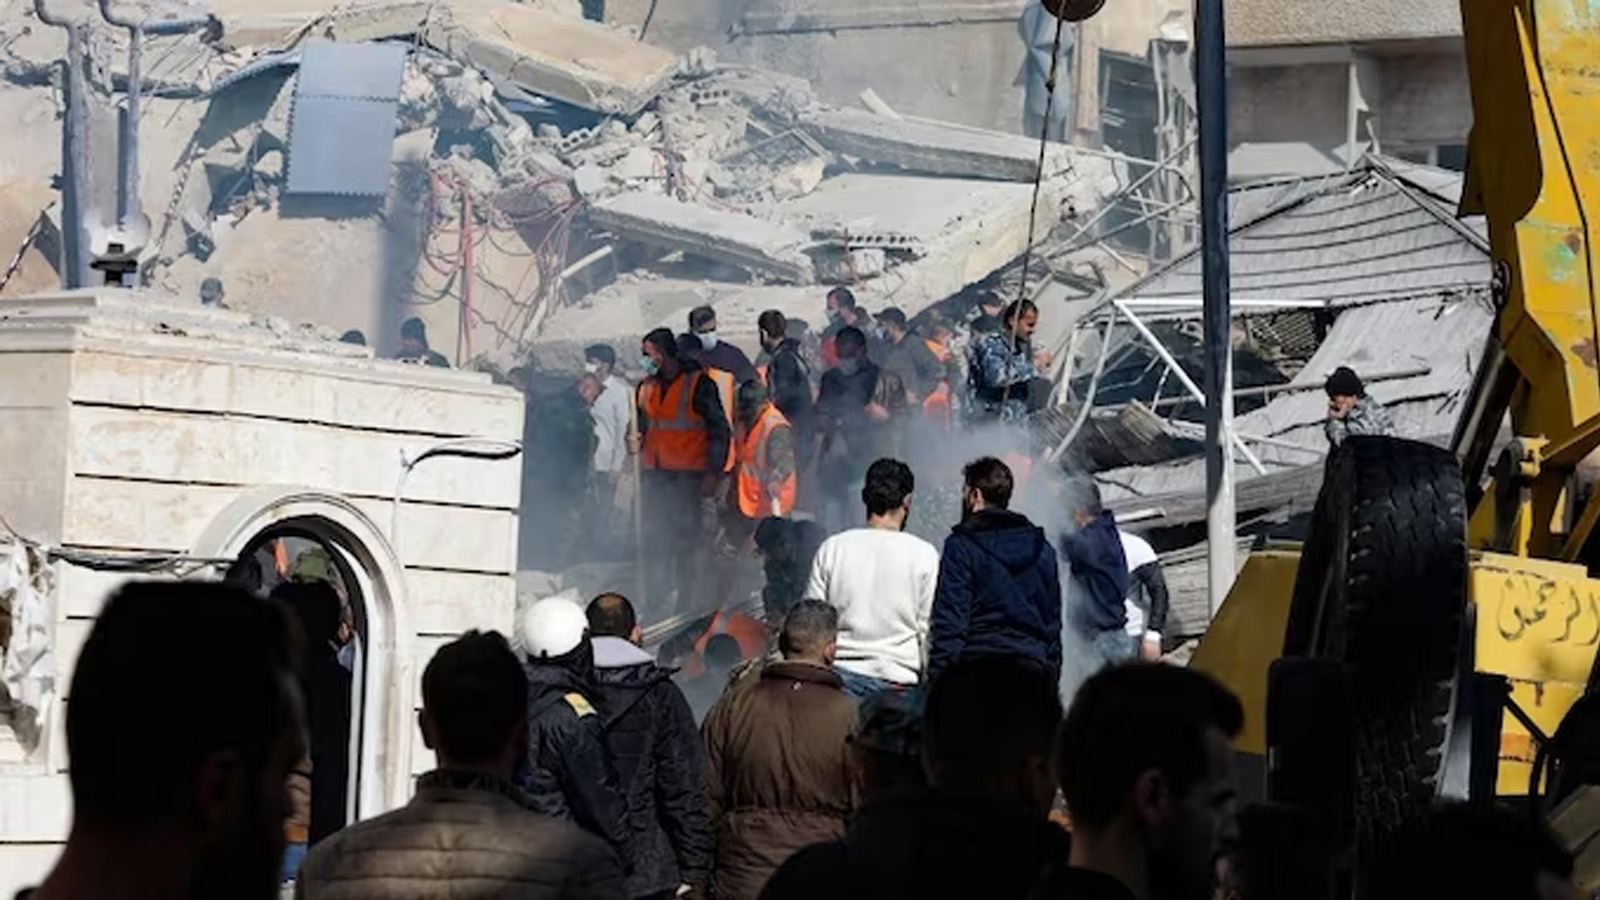 أشخاص وعمال إنقاذ يتجمعون أمام مبنى دمر في غارة إسرائيلية في دمشق